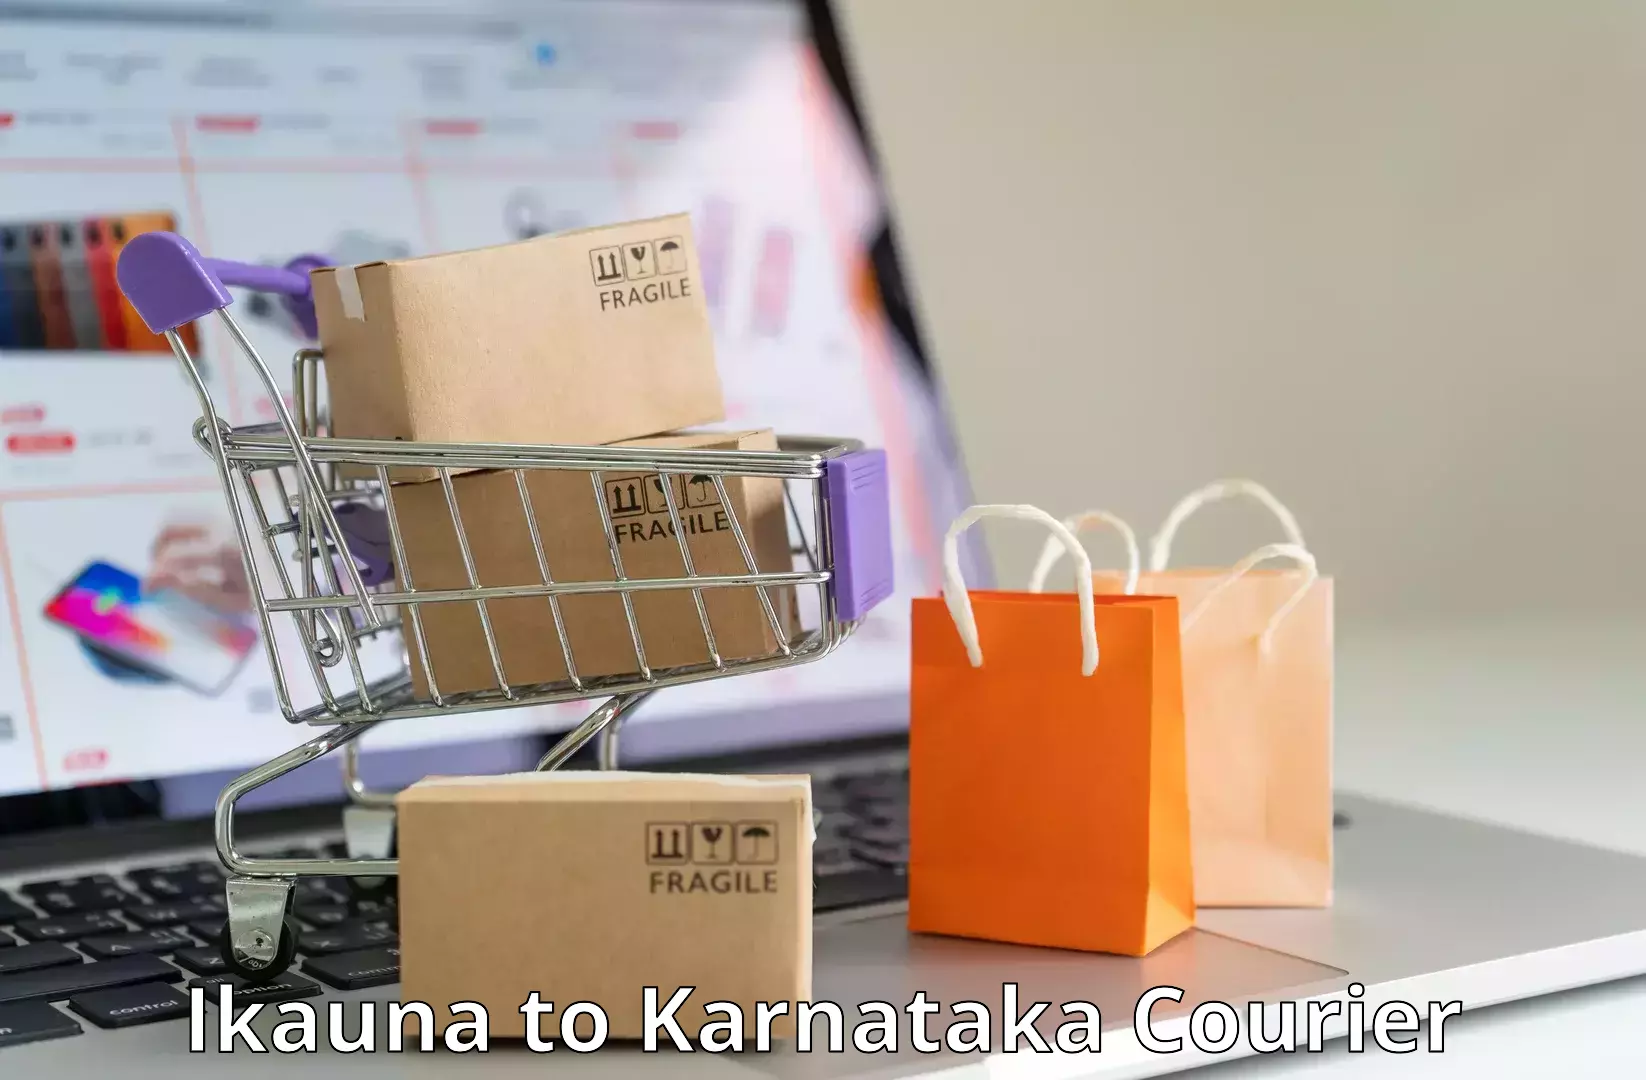 Courier service innovation Ikauna to Karnataka